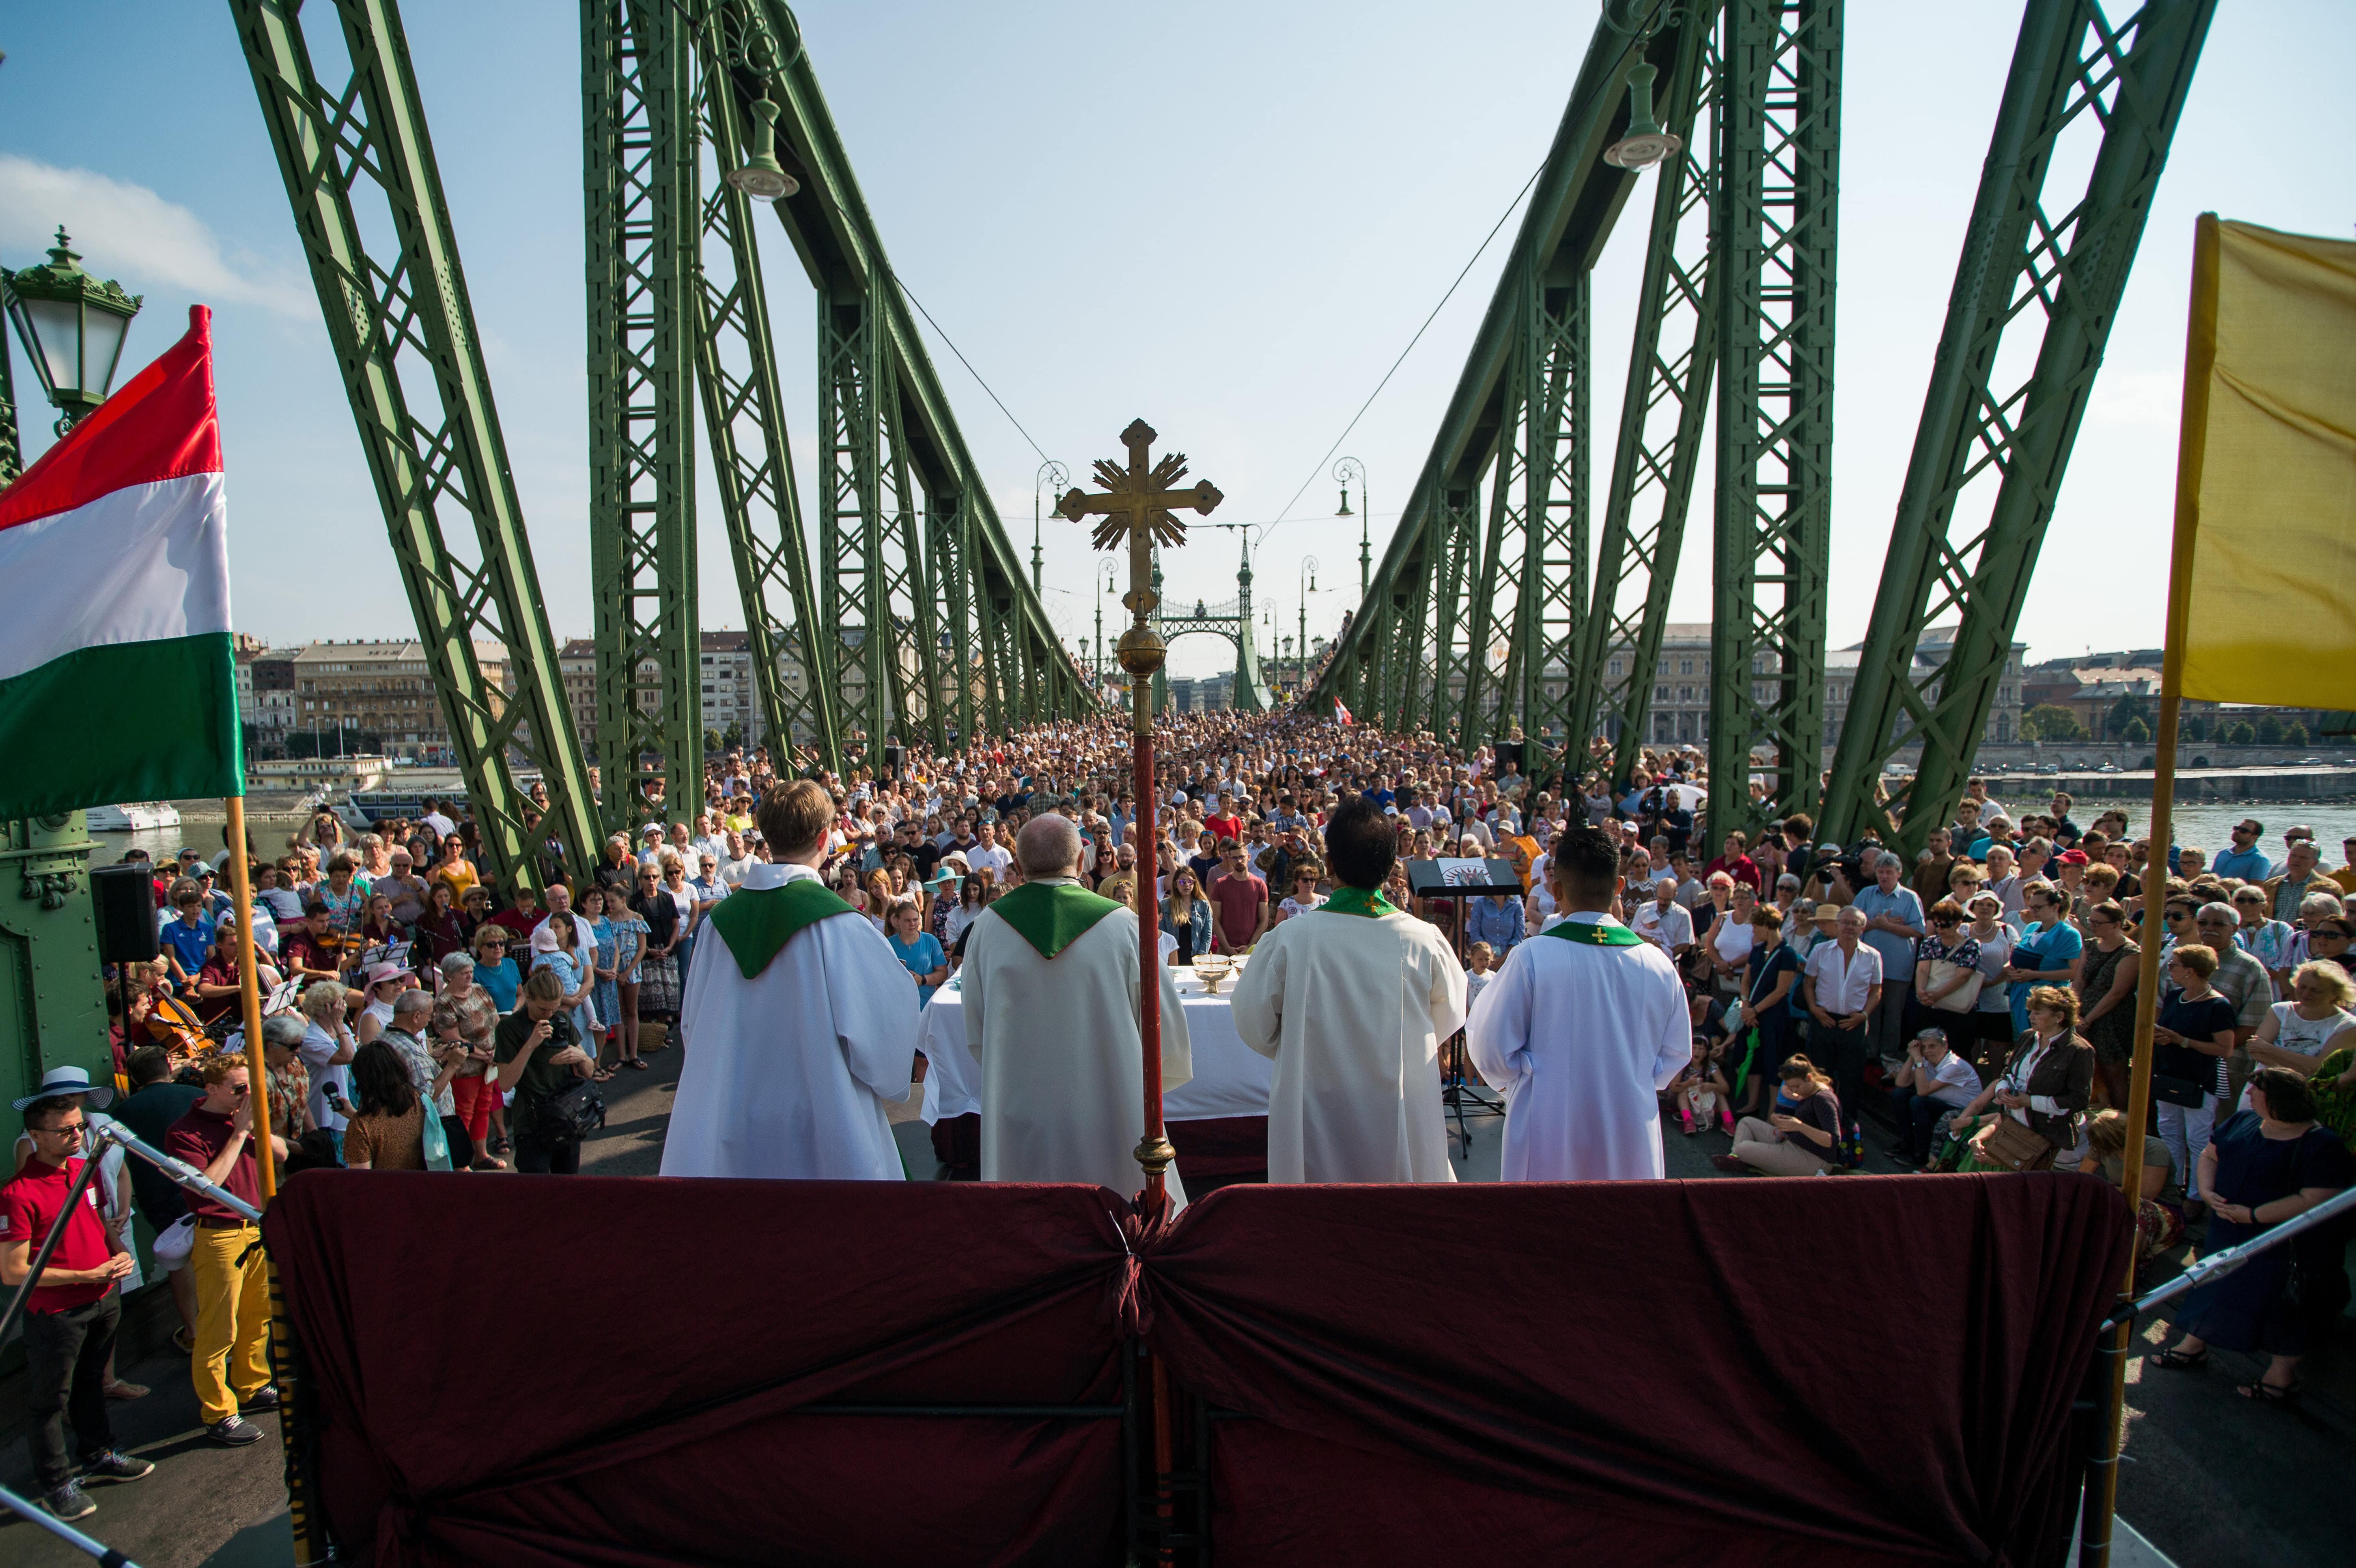 Die Messe wurde auf der Budapester Freiheitsbrücke abgehalten